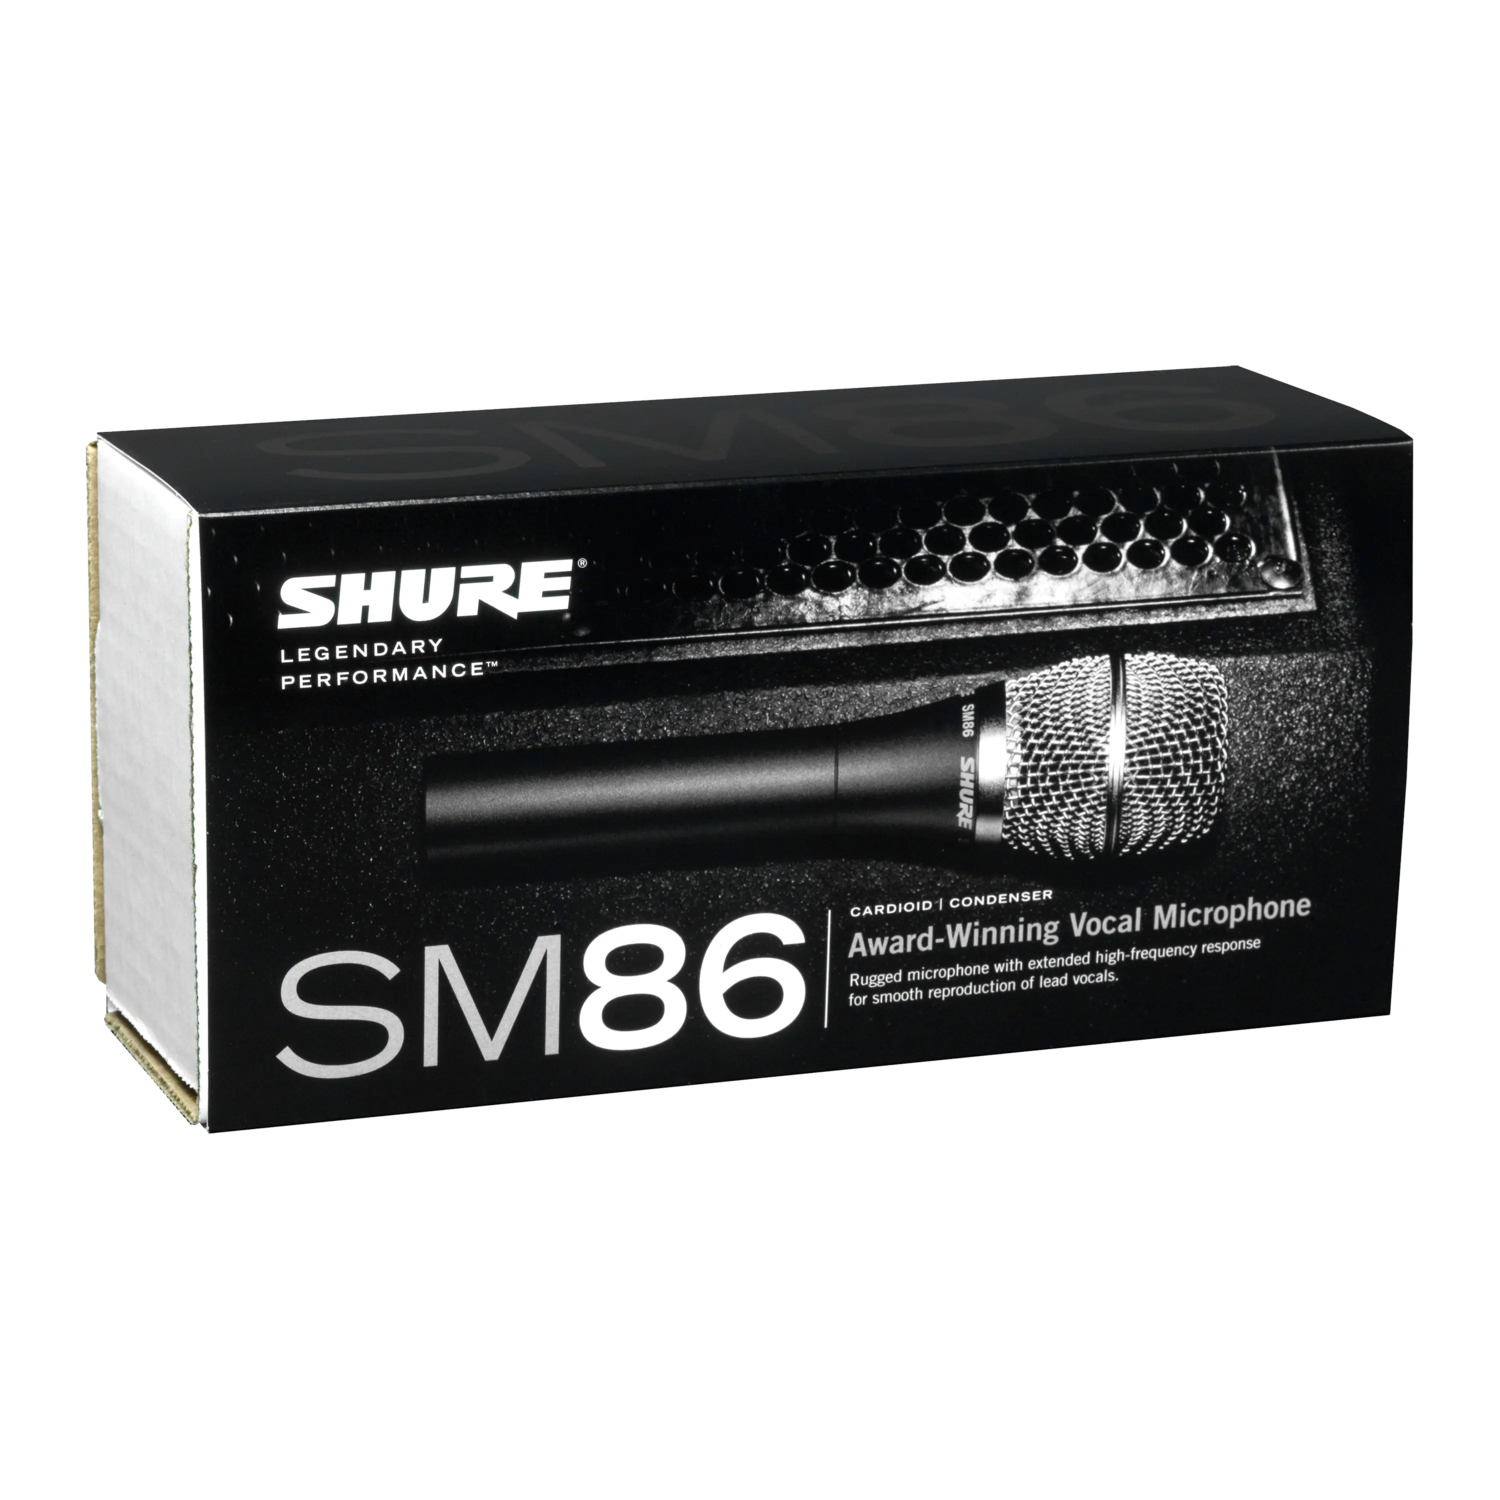 SM86 - SM86 Micrófono vocal - Shure América Latina